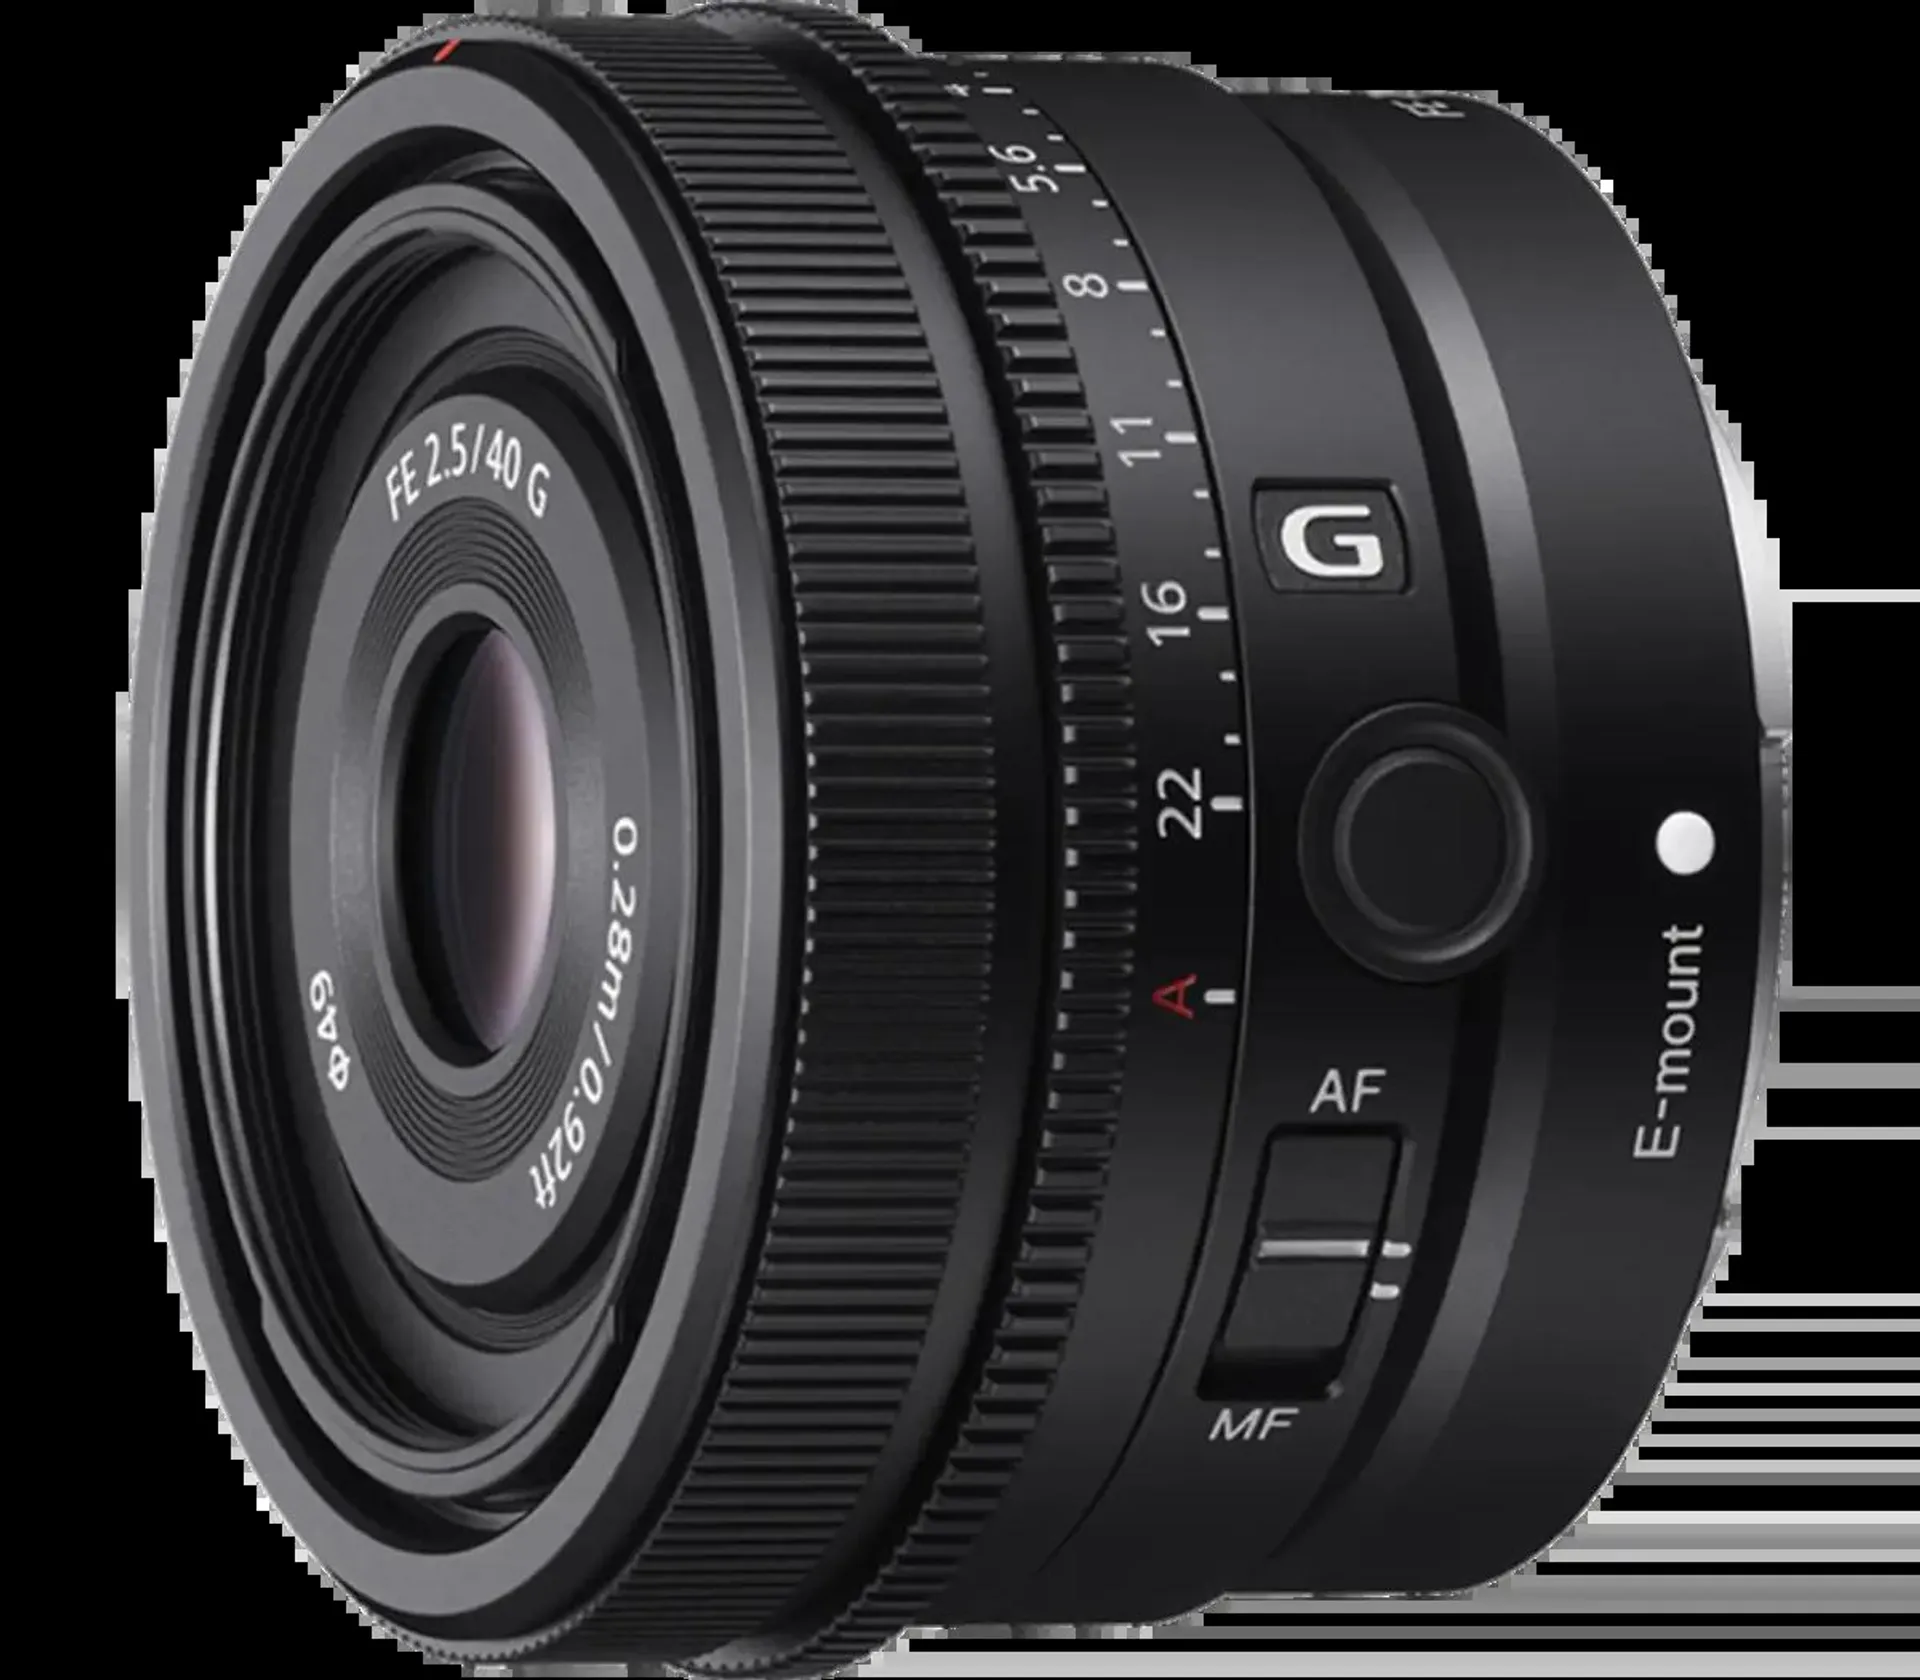 FE 40mm F2.5 G Full-frame Standard Prime G Lens